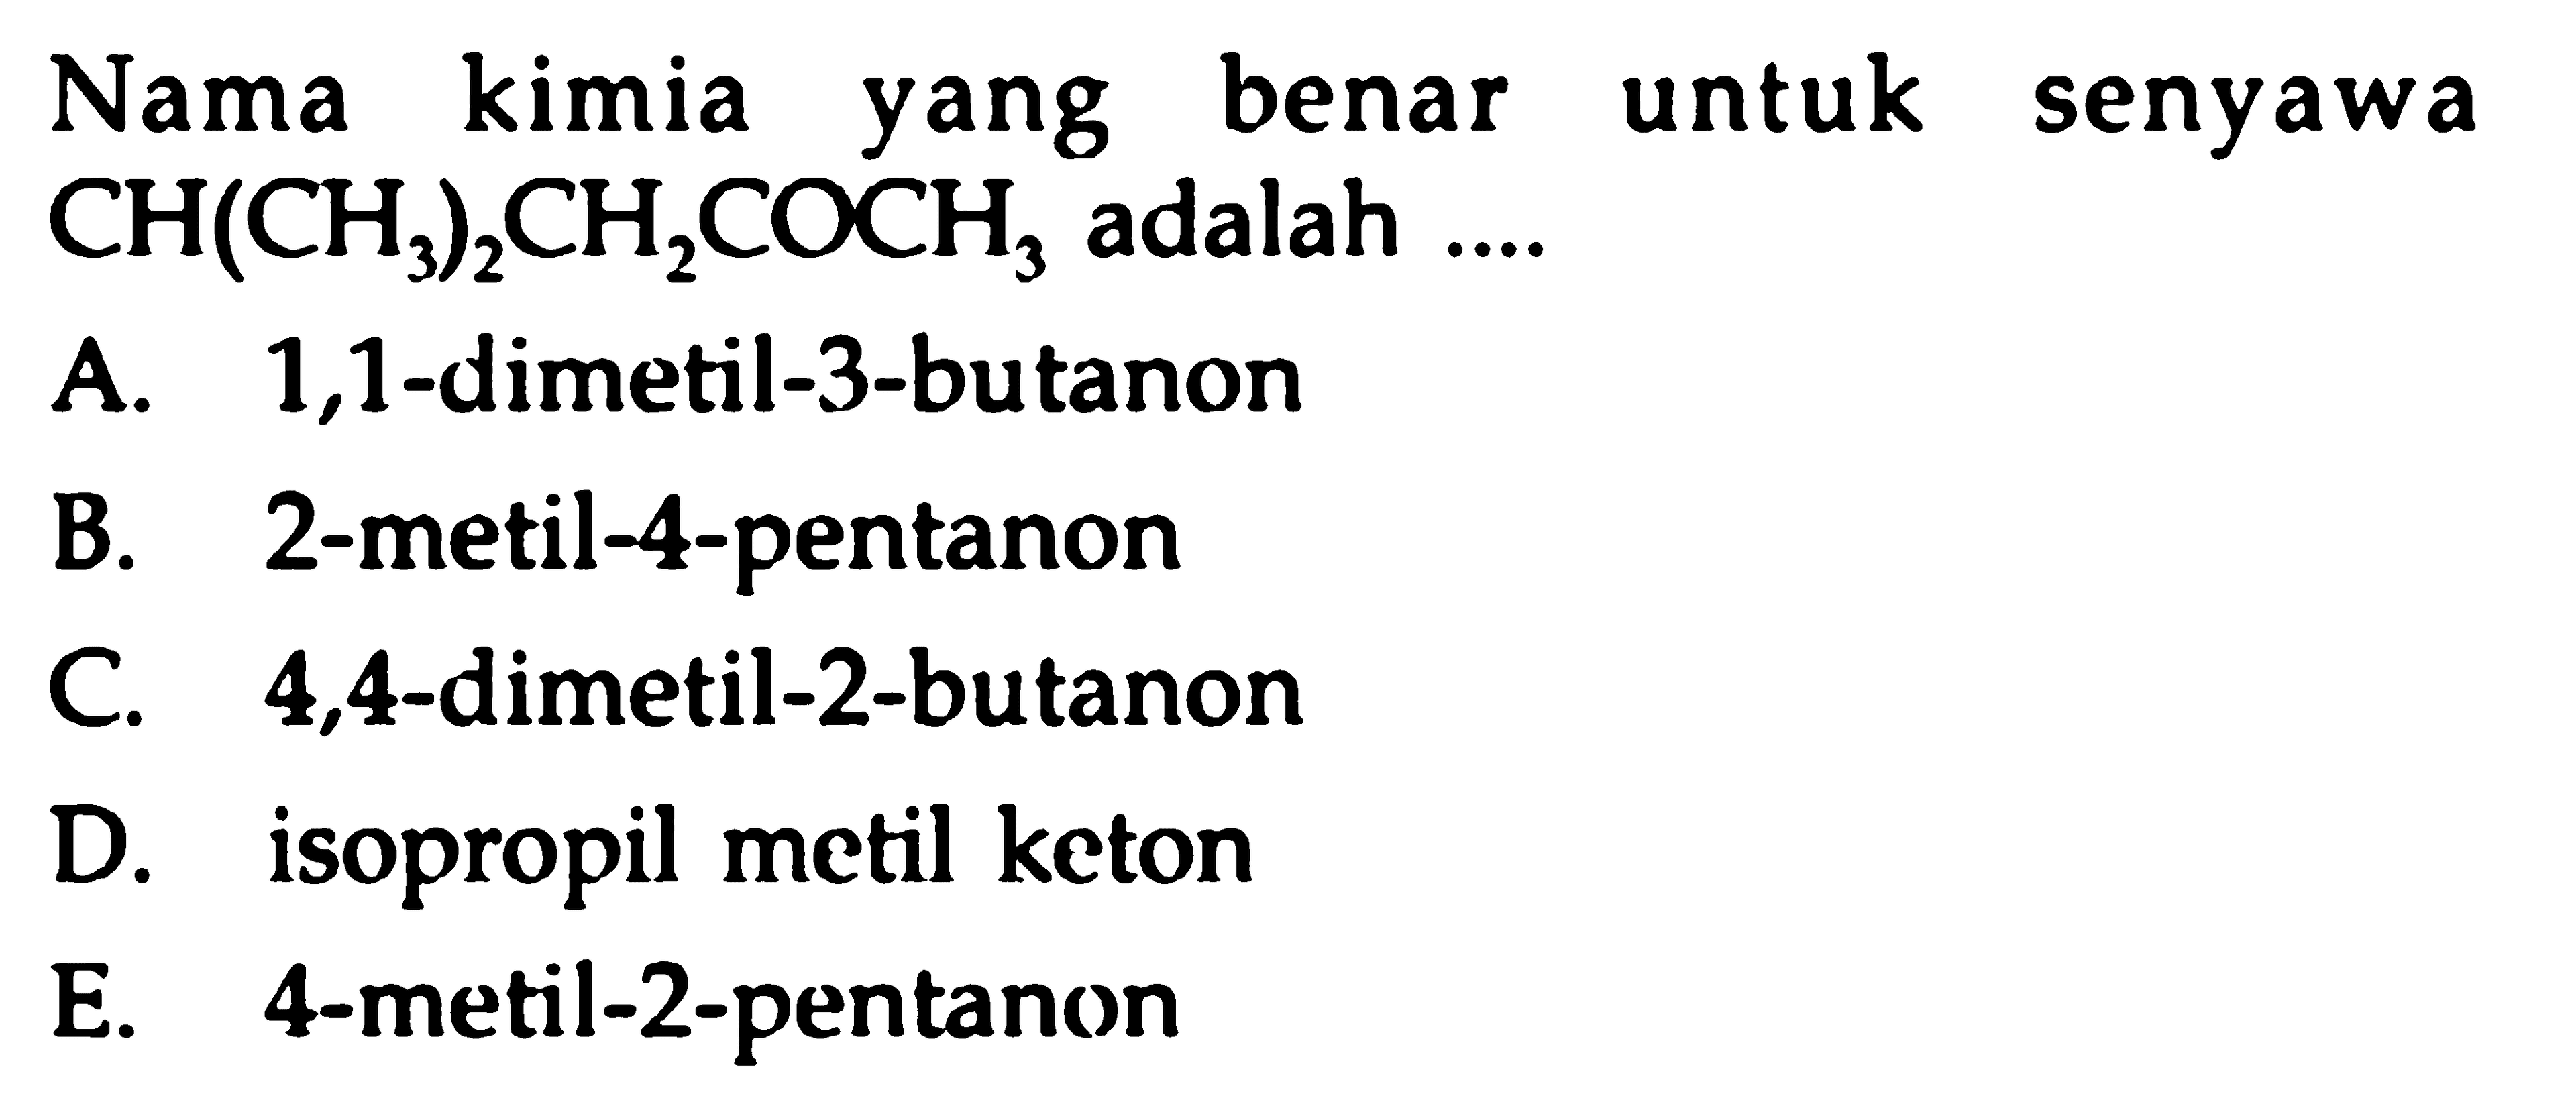 Nama kimia yang benar untuk senyawa CH(CH3)2CH2COCH3 adalah.... A. 1,1-dimetil-3-butanonB. 2-metil-4-pentanonC. 4,4-dimetil-2-butanonD. isopropil metil ketonE. 4-metil-2-pentanon 